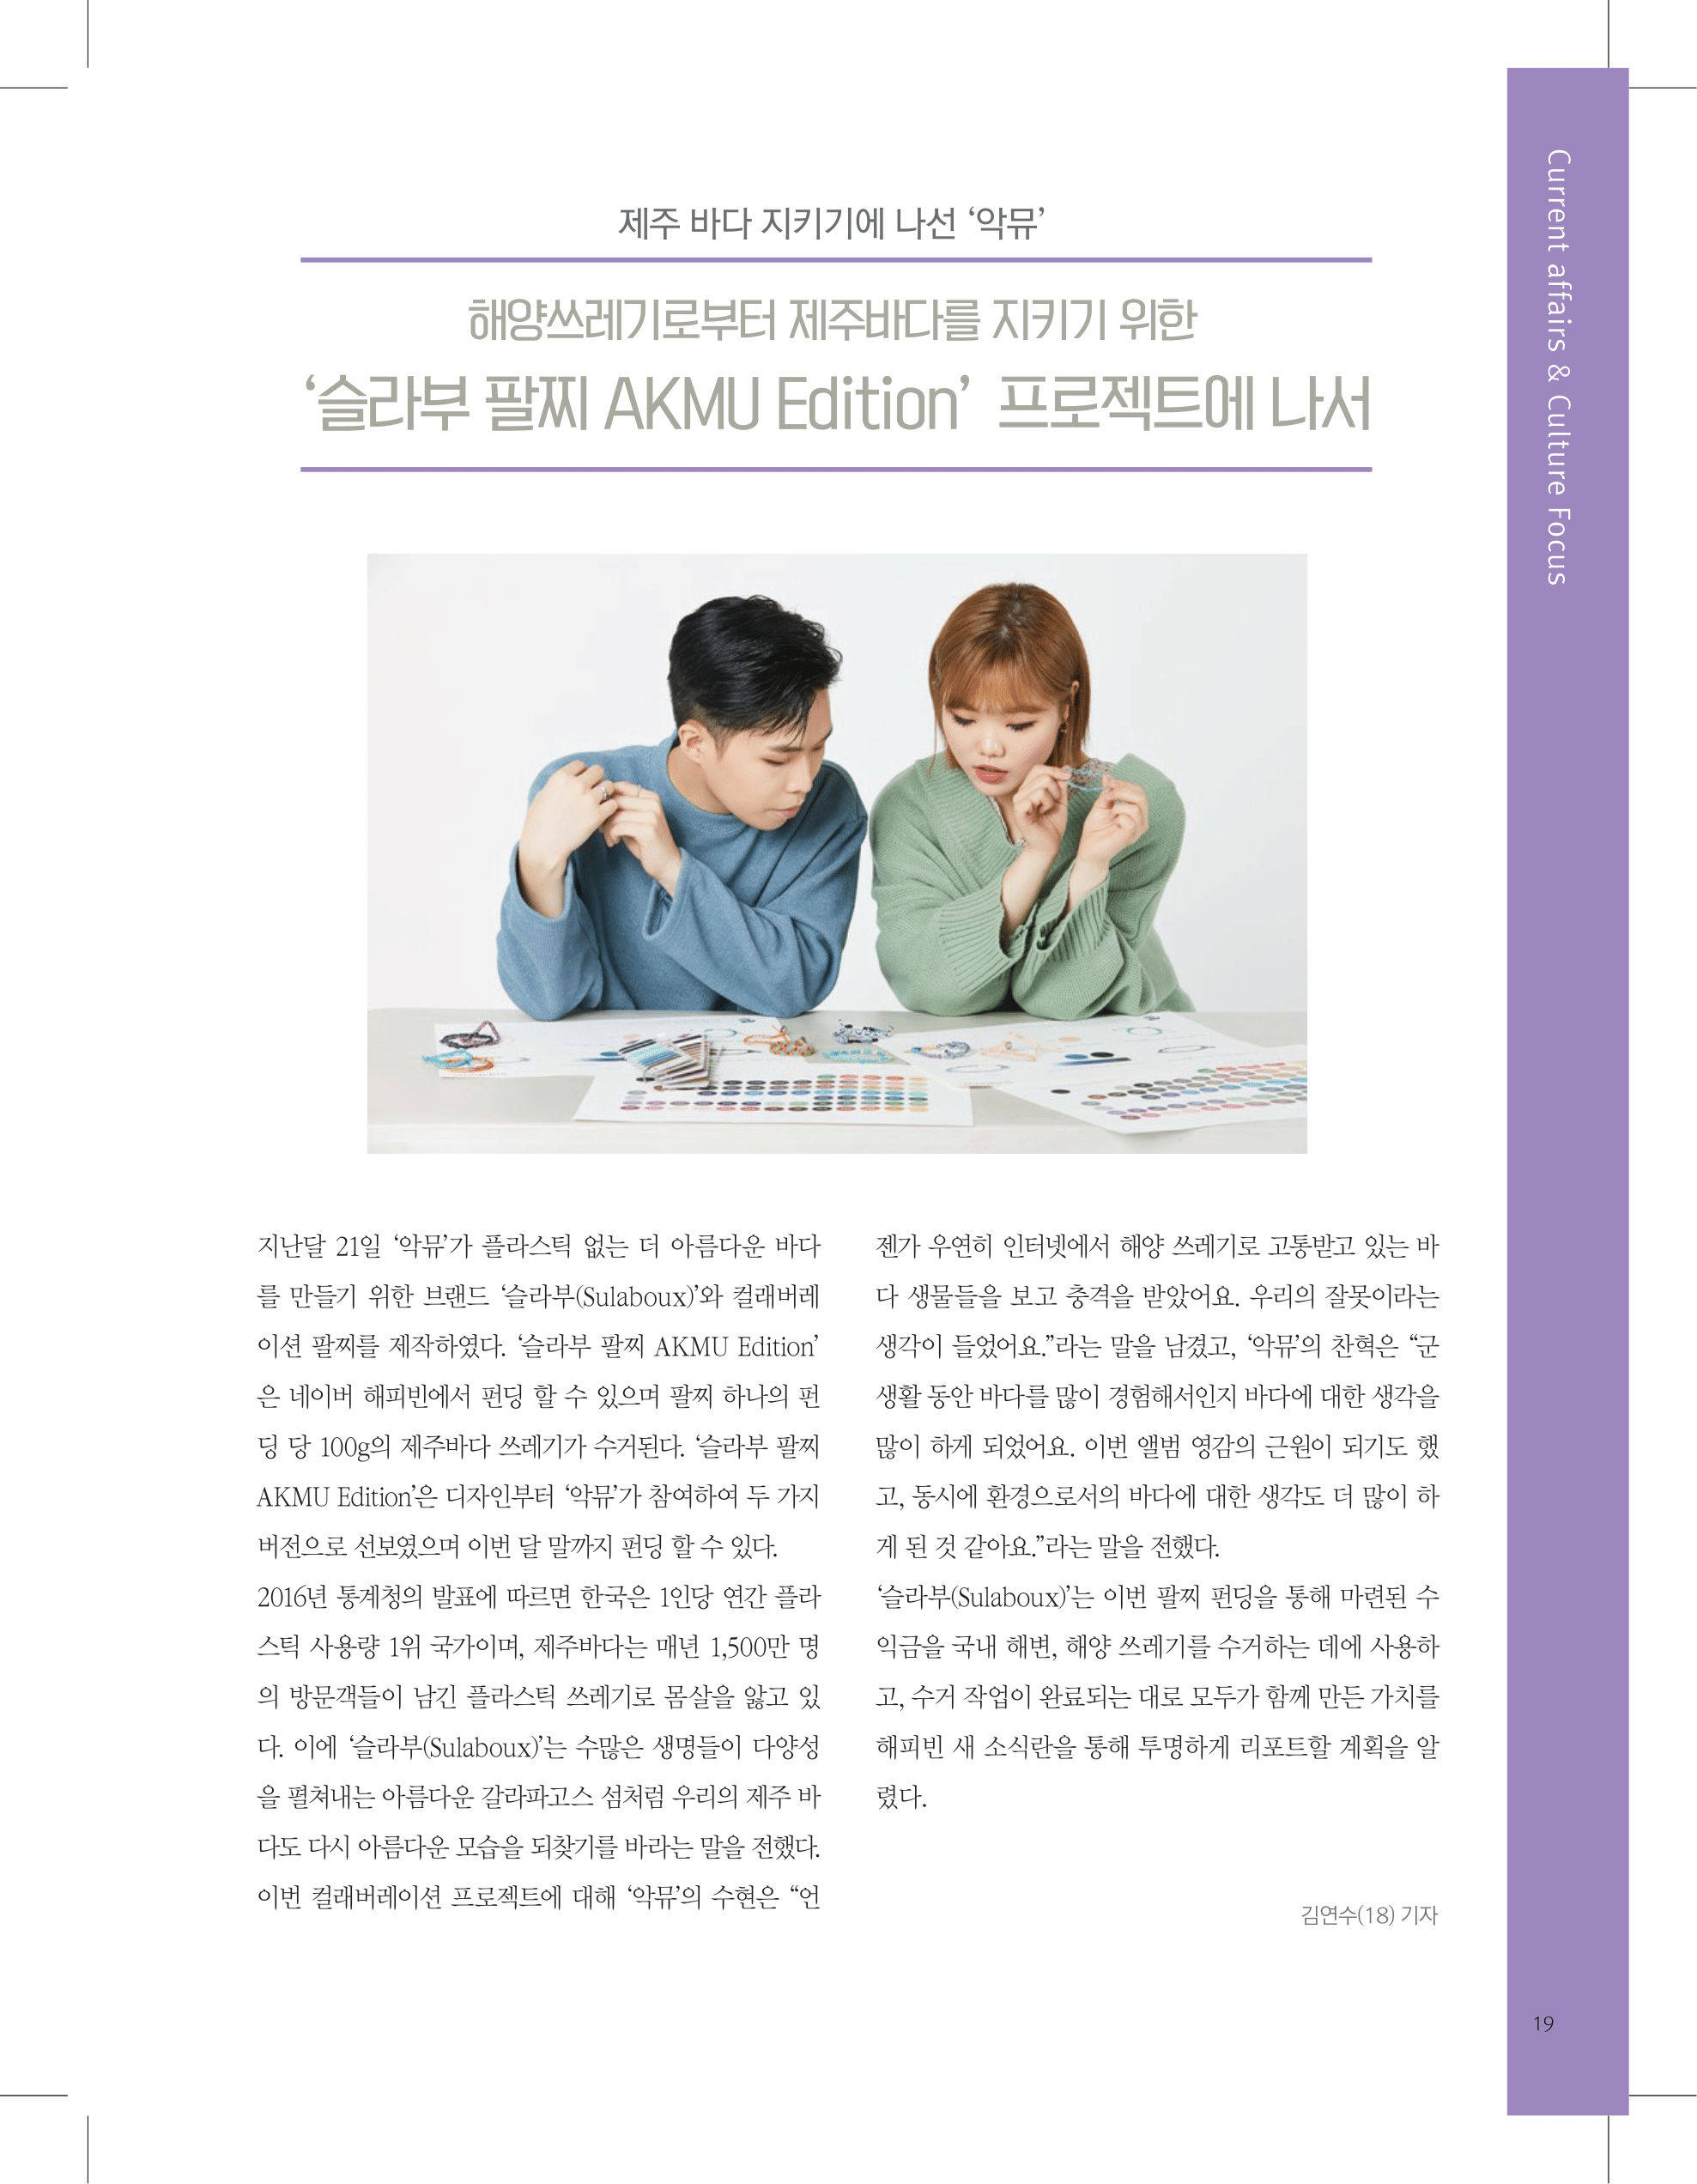 뜻새김 신문 74호 19